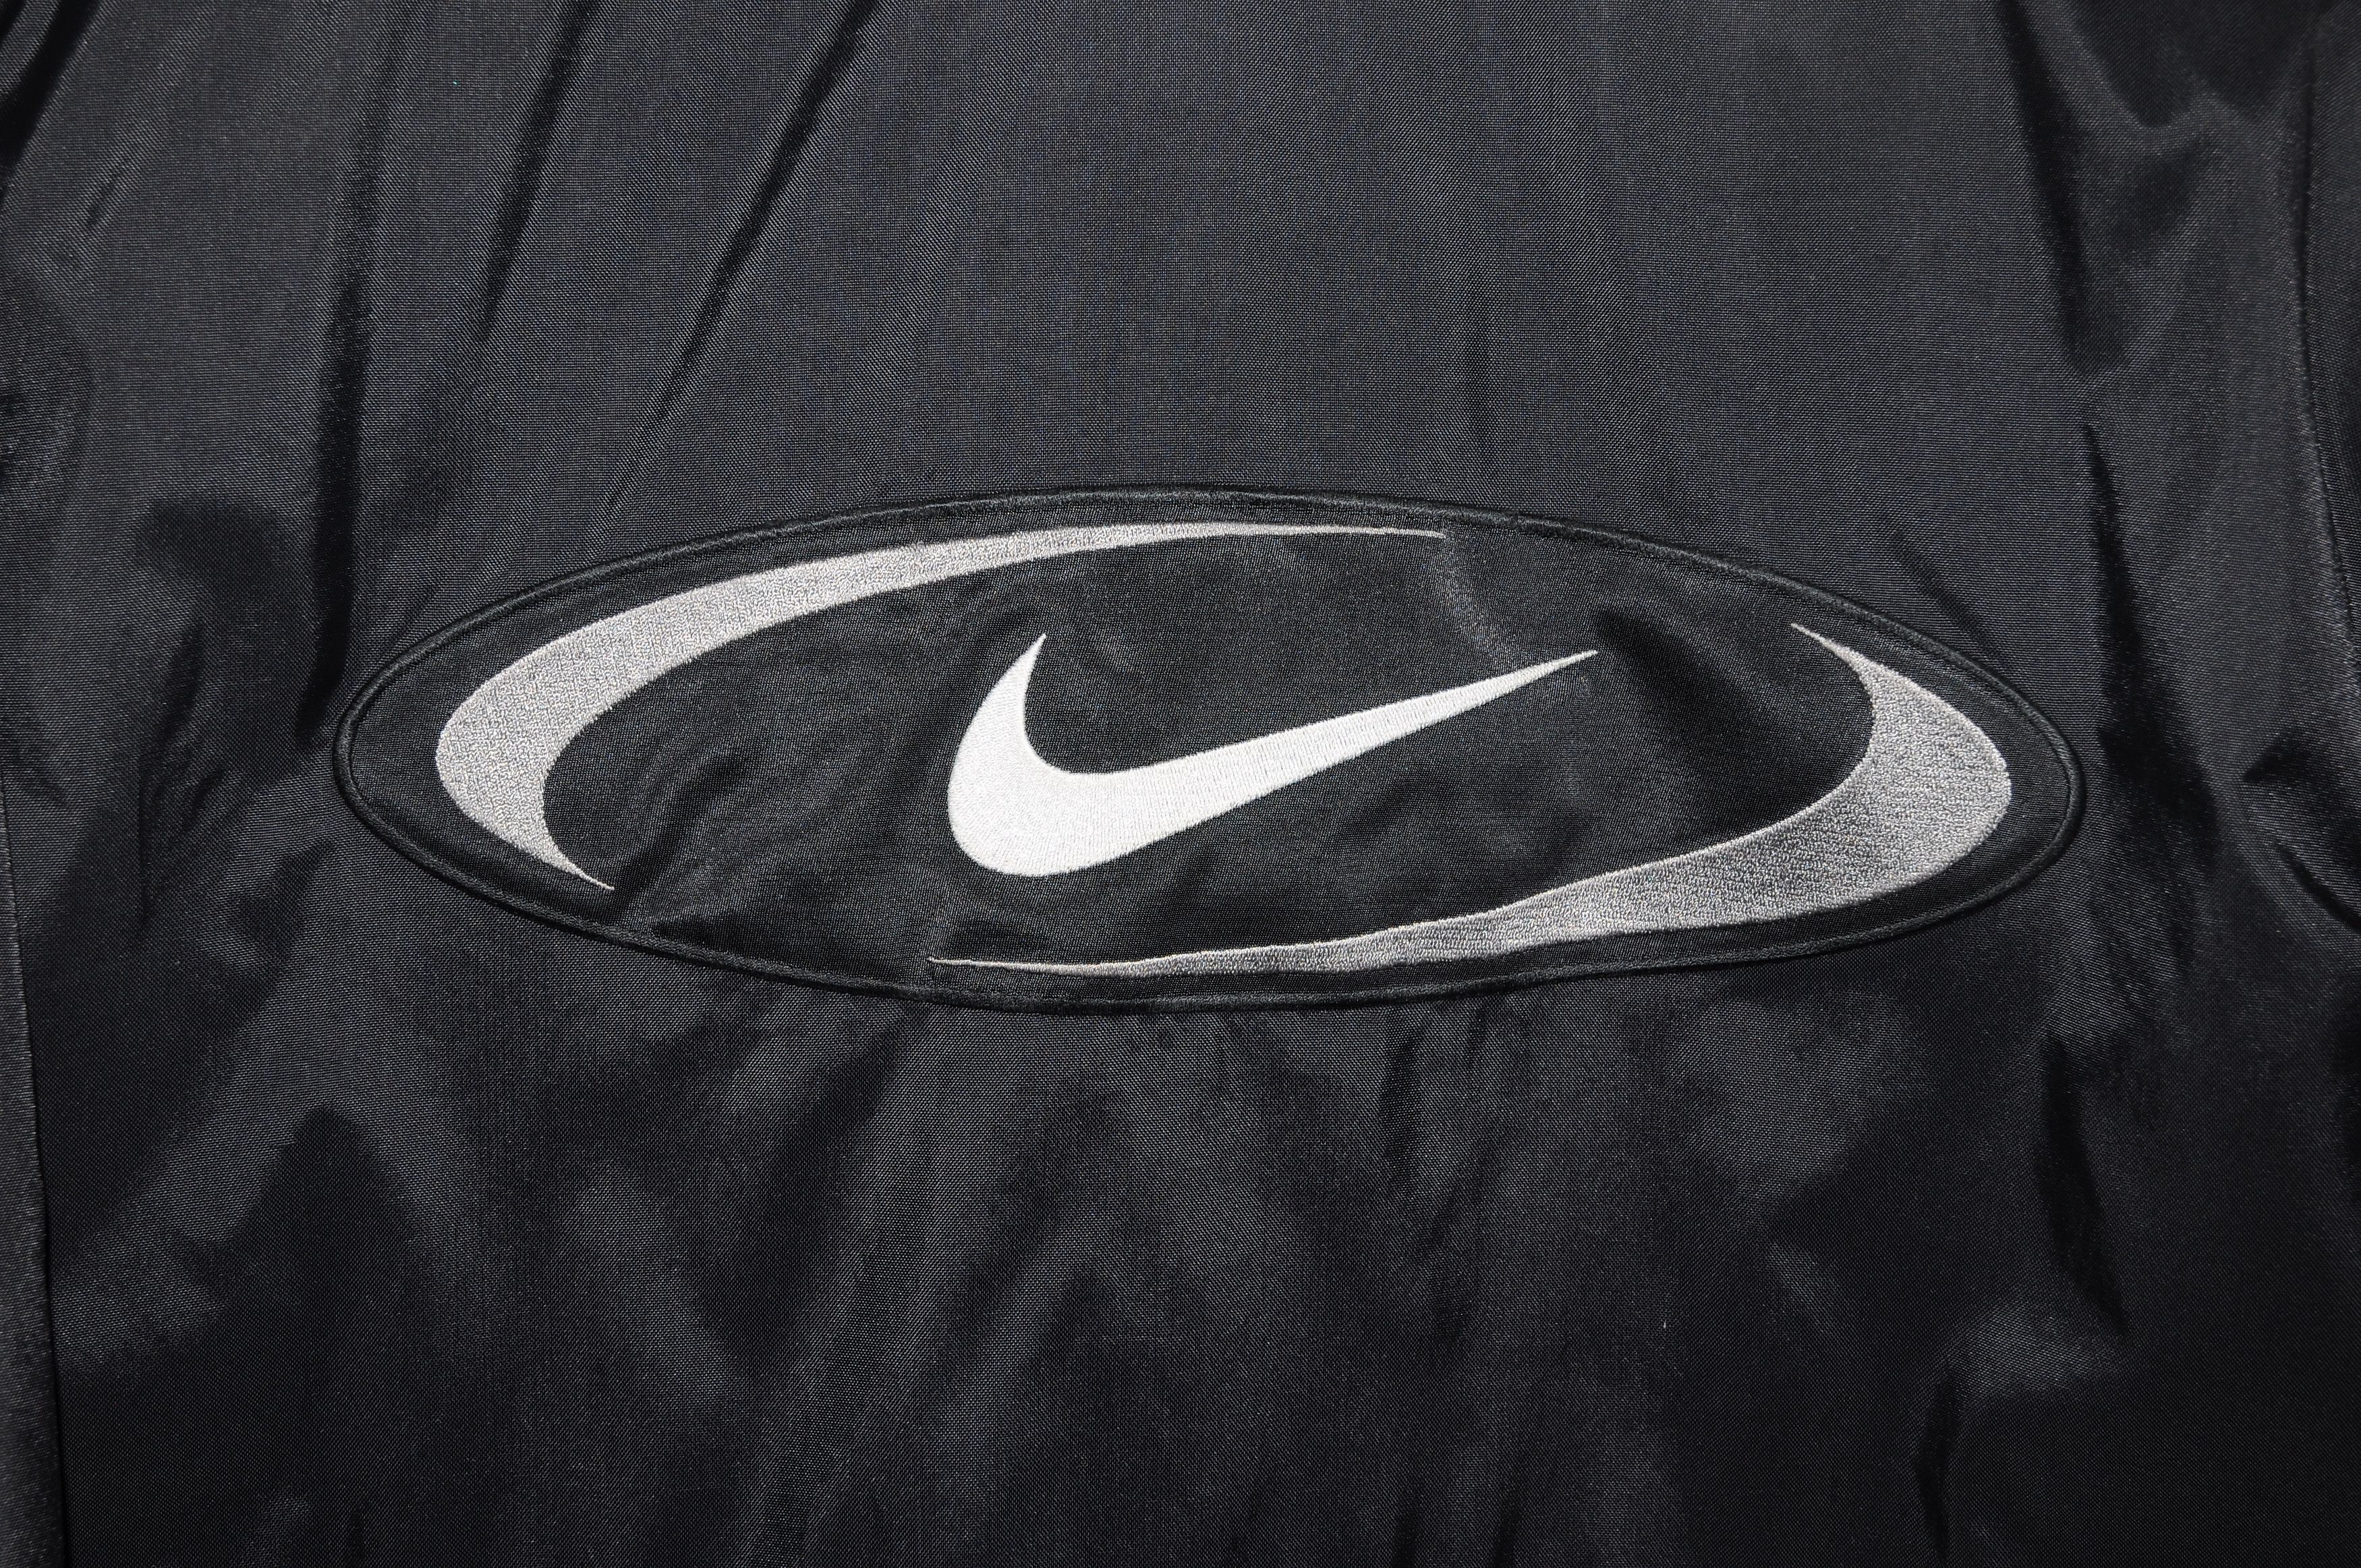 Nike vintage Nike mens Nylon Track Jacket Black White Retro 90s Size US S / EU 44-46 / 1 - 4 Thumbnail